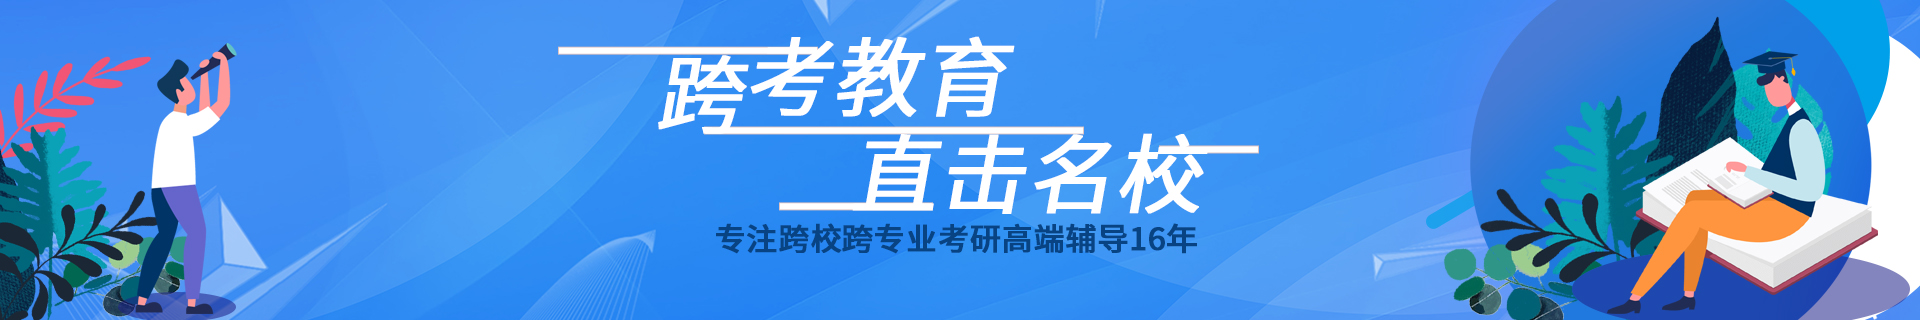 上海杨浦跨考教育培训机构